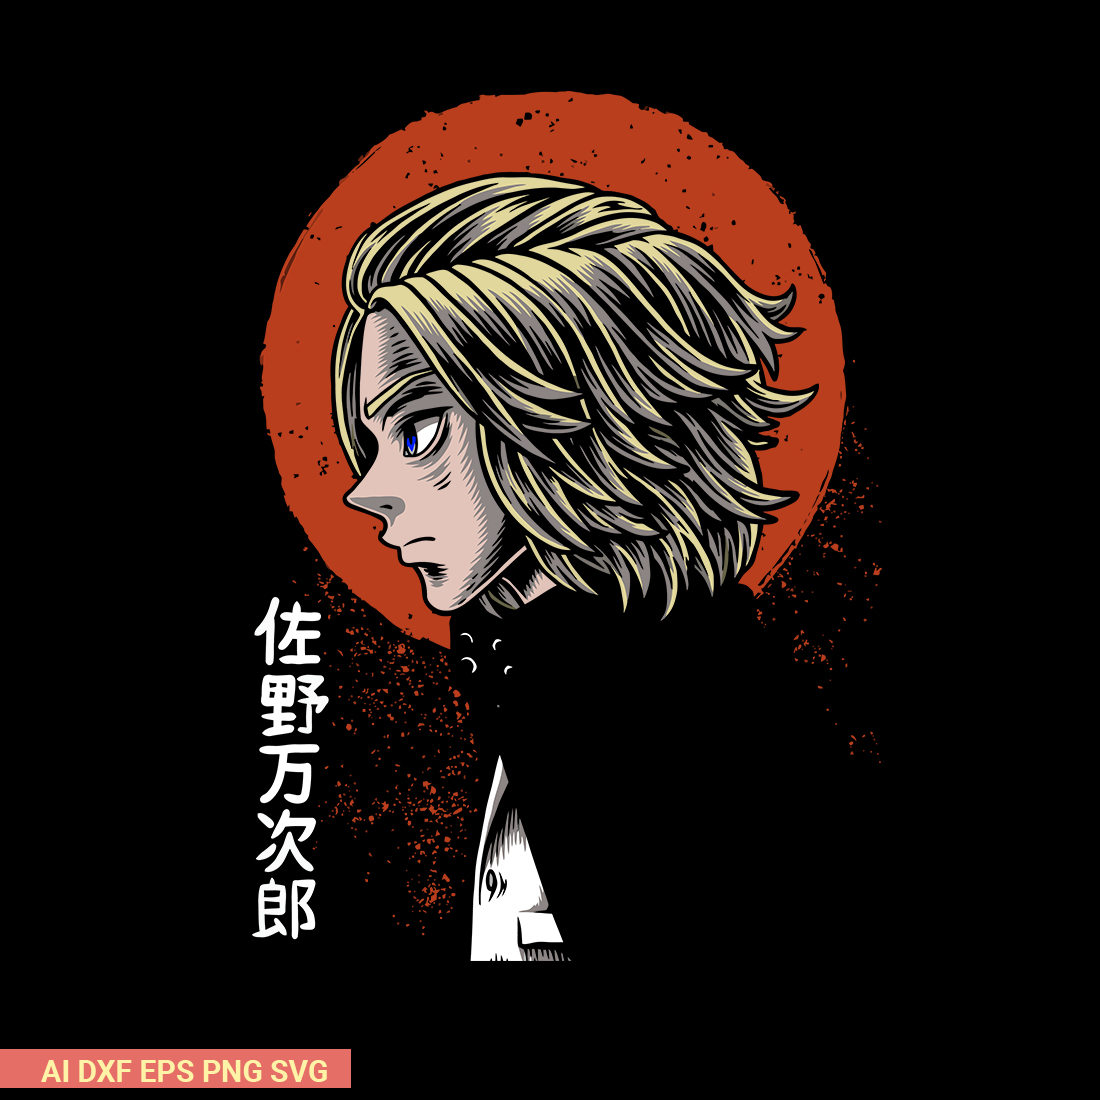 Tokyo Revengers Anime SVG cover image.